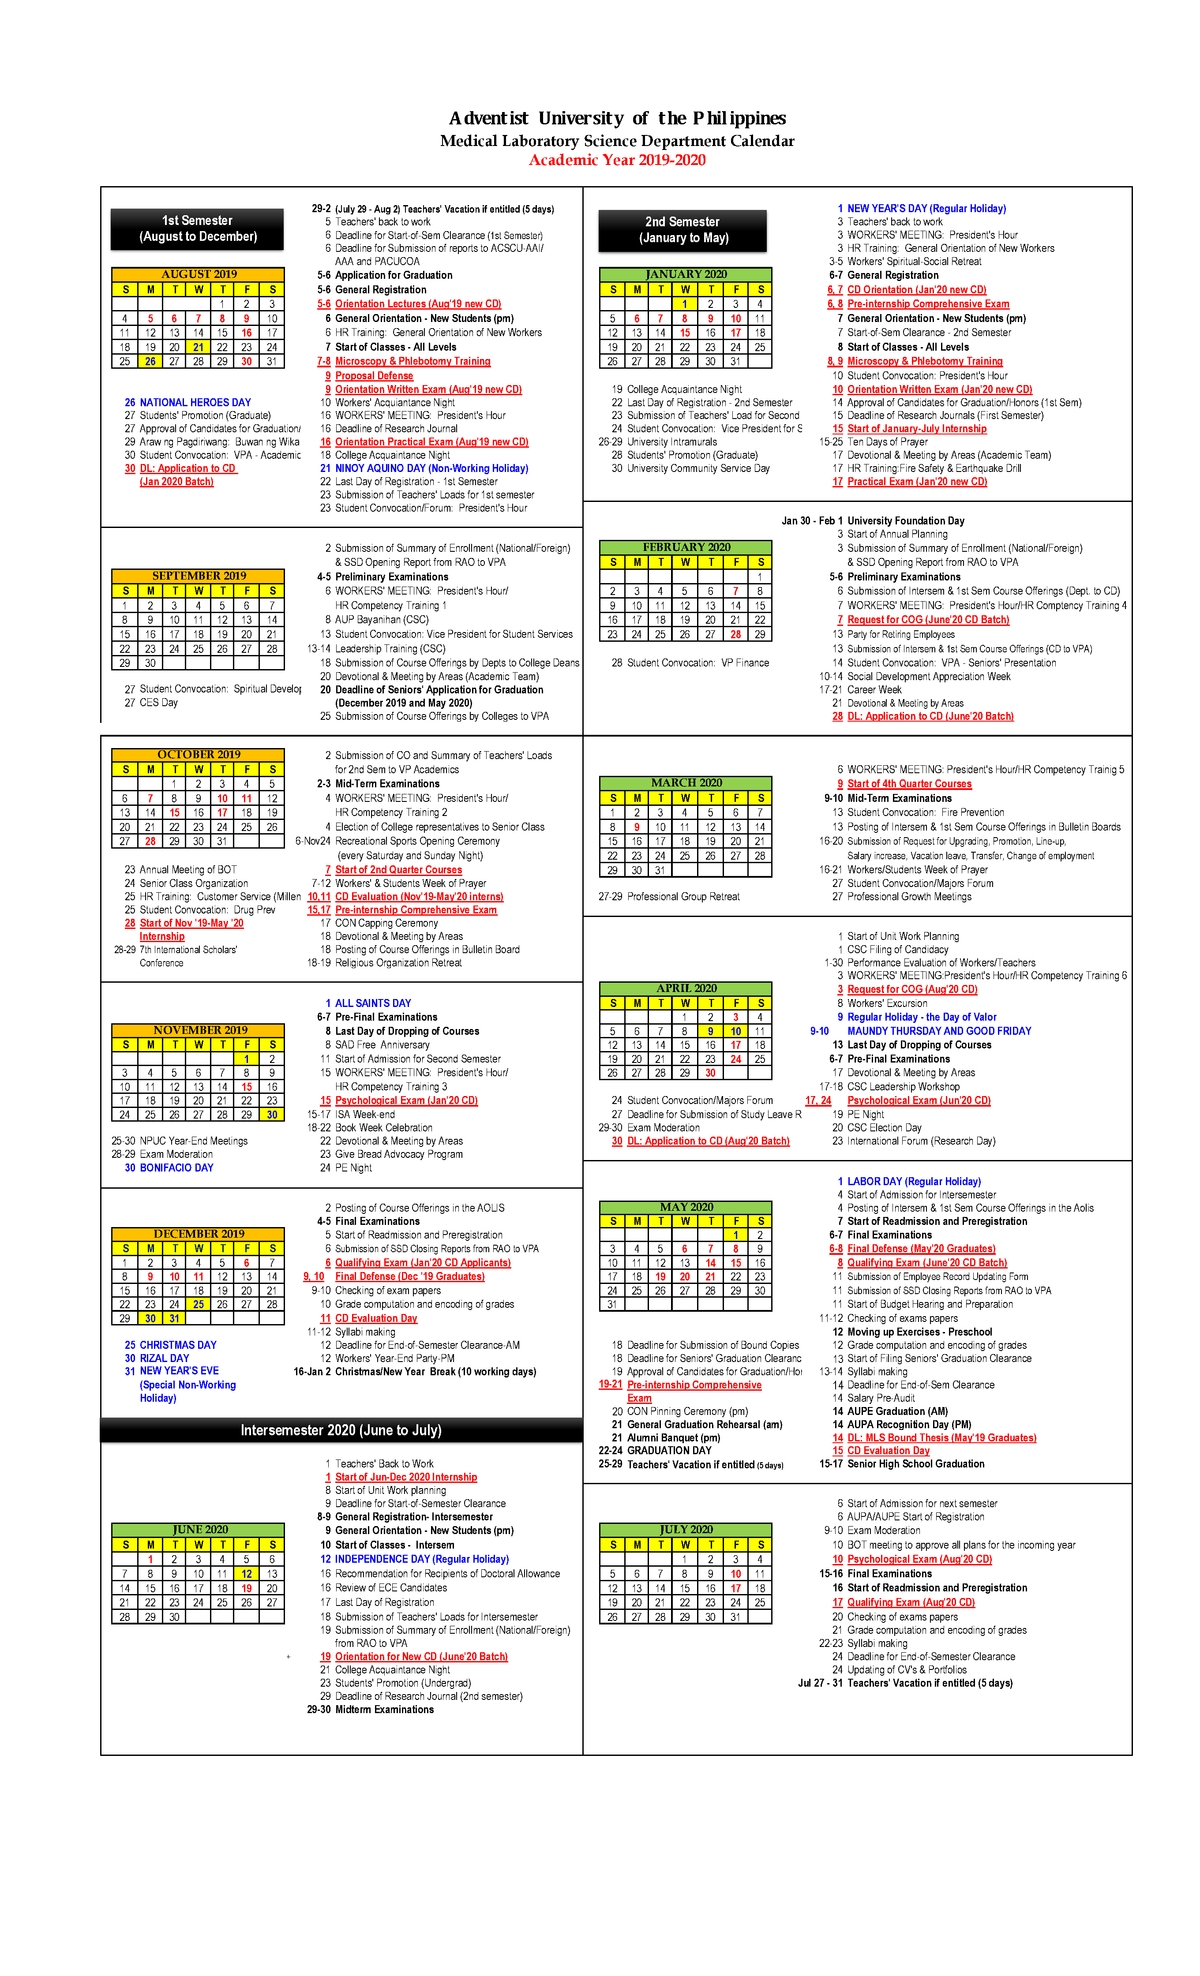 U Of R Calendar 2020 | Calendar Printables Free Templates